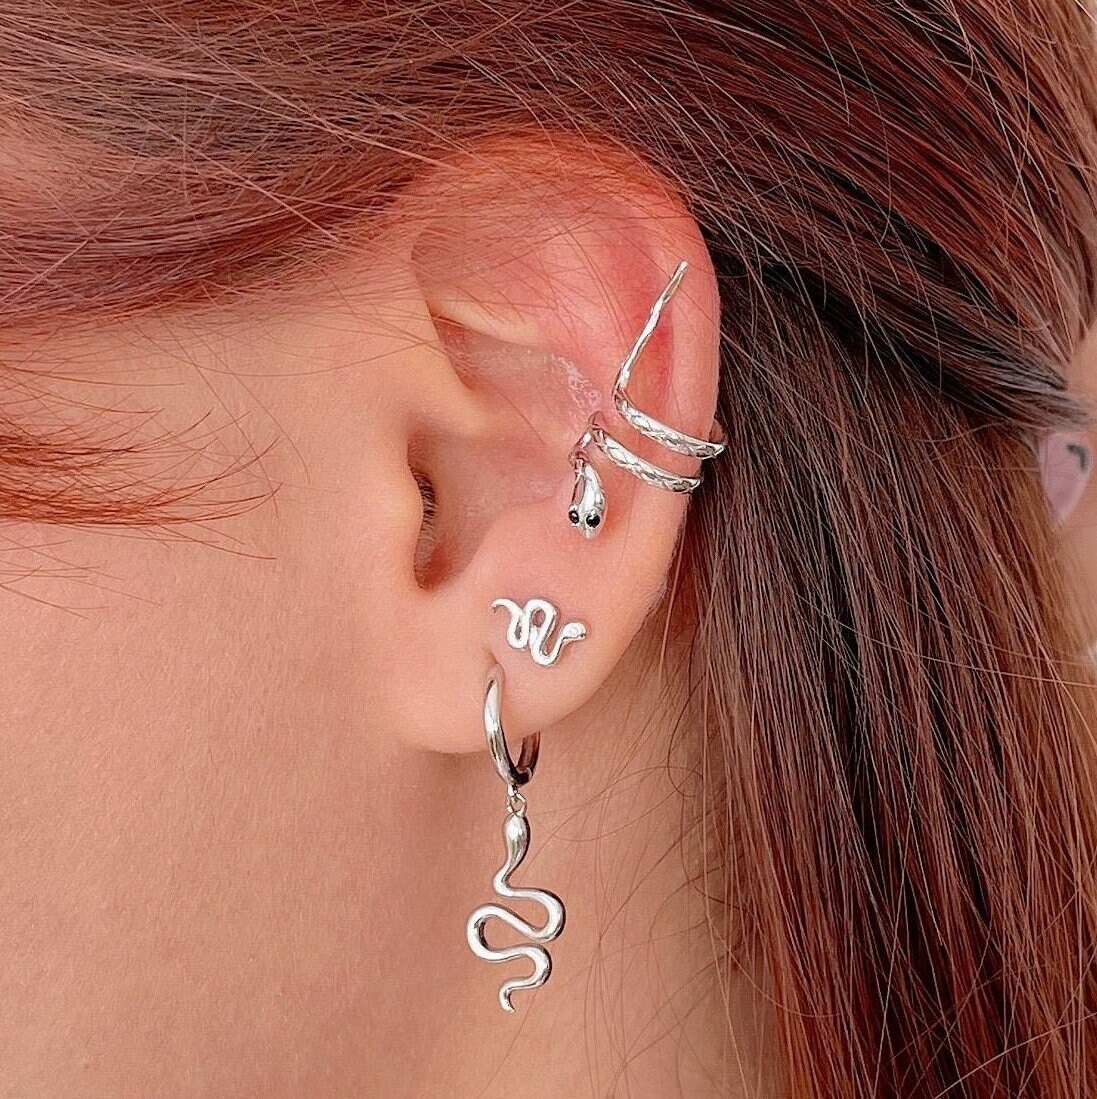 4 Earrings Set, Ear Cuff, Helix Earring, Cartilage Piercing in 925 Sterling  Silver and Gold Plated, Huggie Earrings, Ear Jacket Earring -  Norway